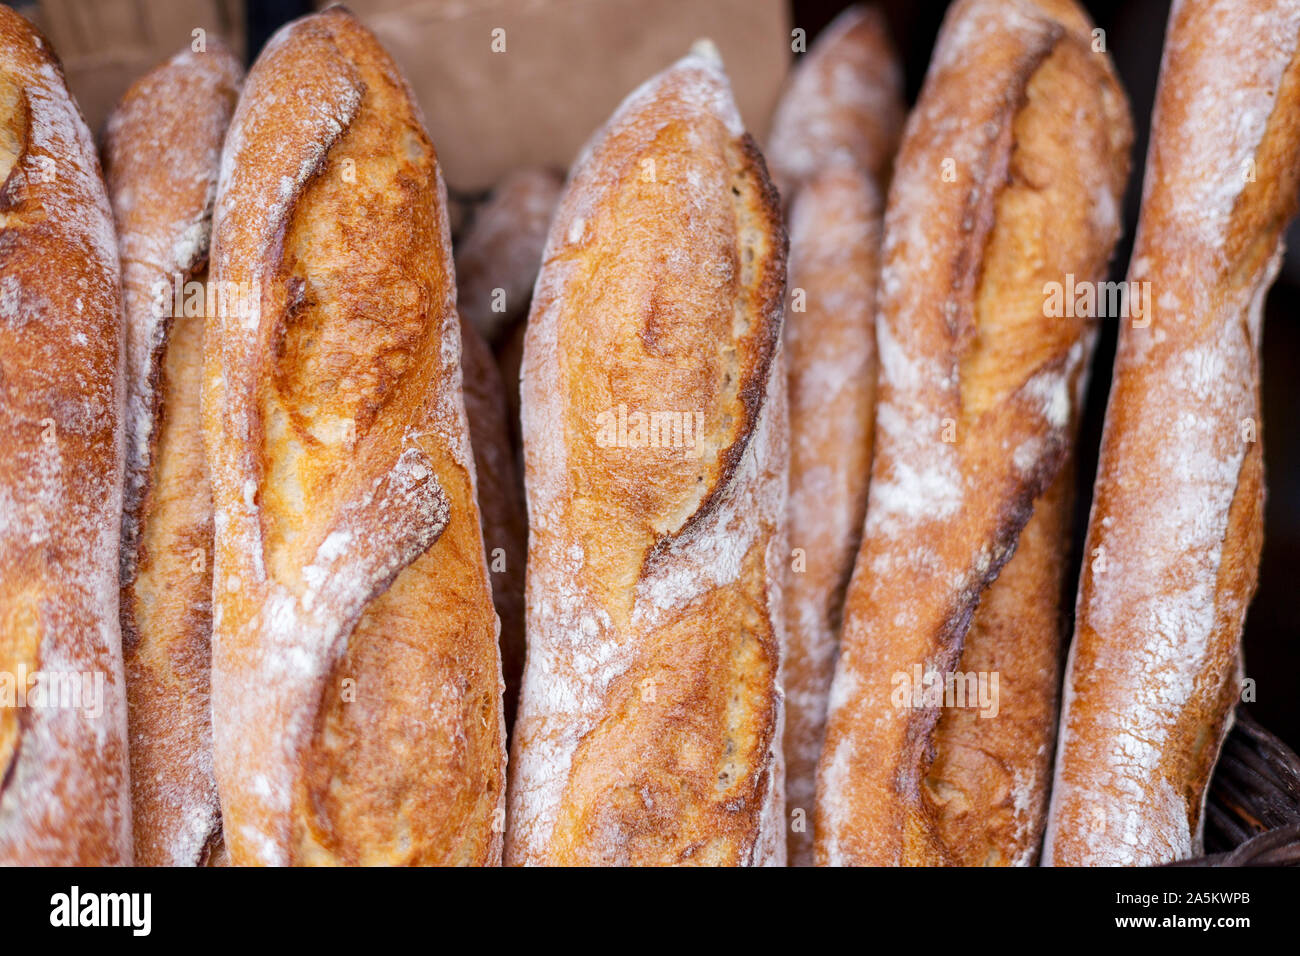 Baguettes savoureuses frais sur le marché des aliments de rue. Concept de cuisine française Banque D'Images